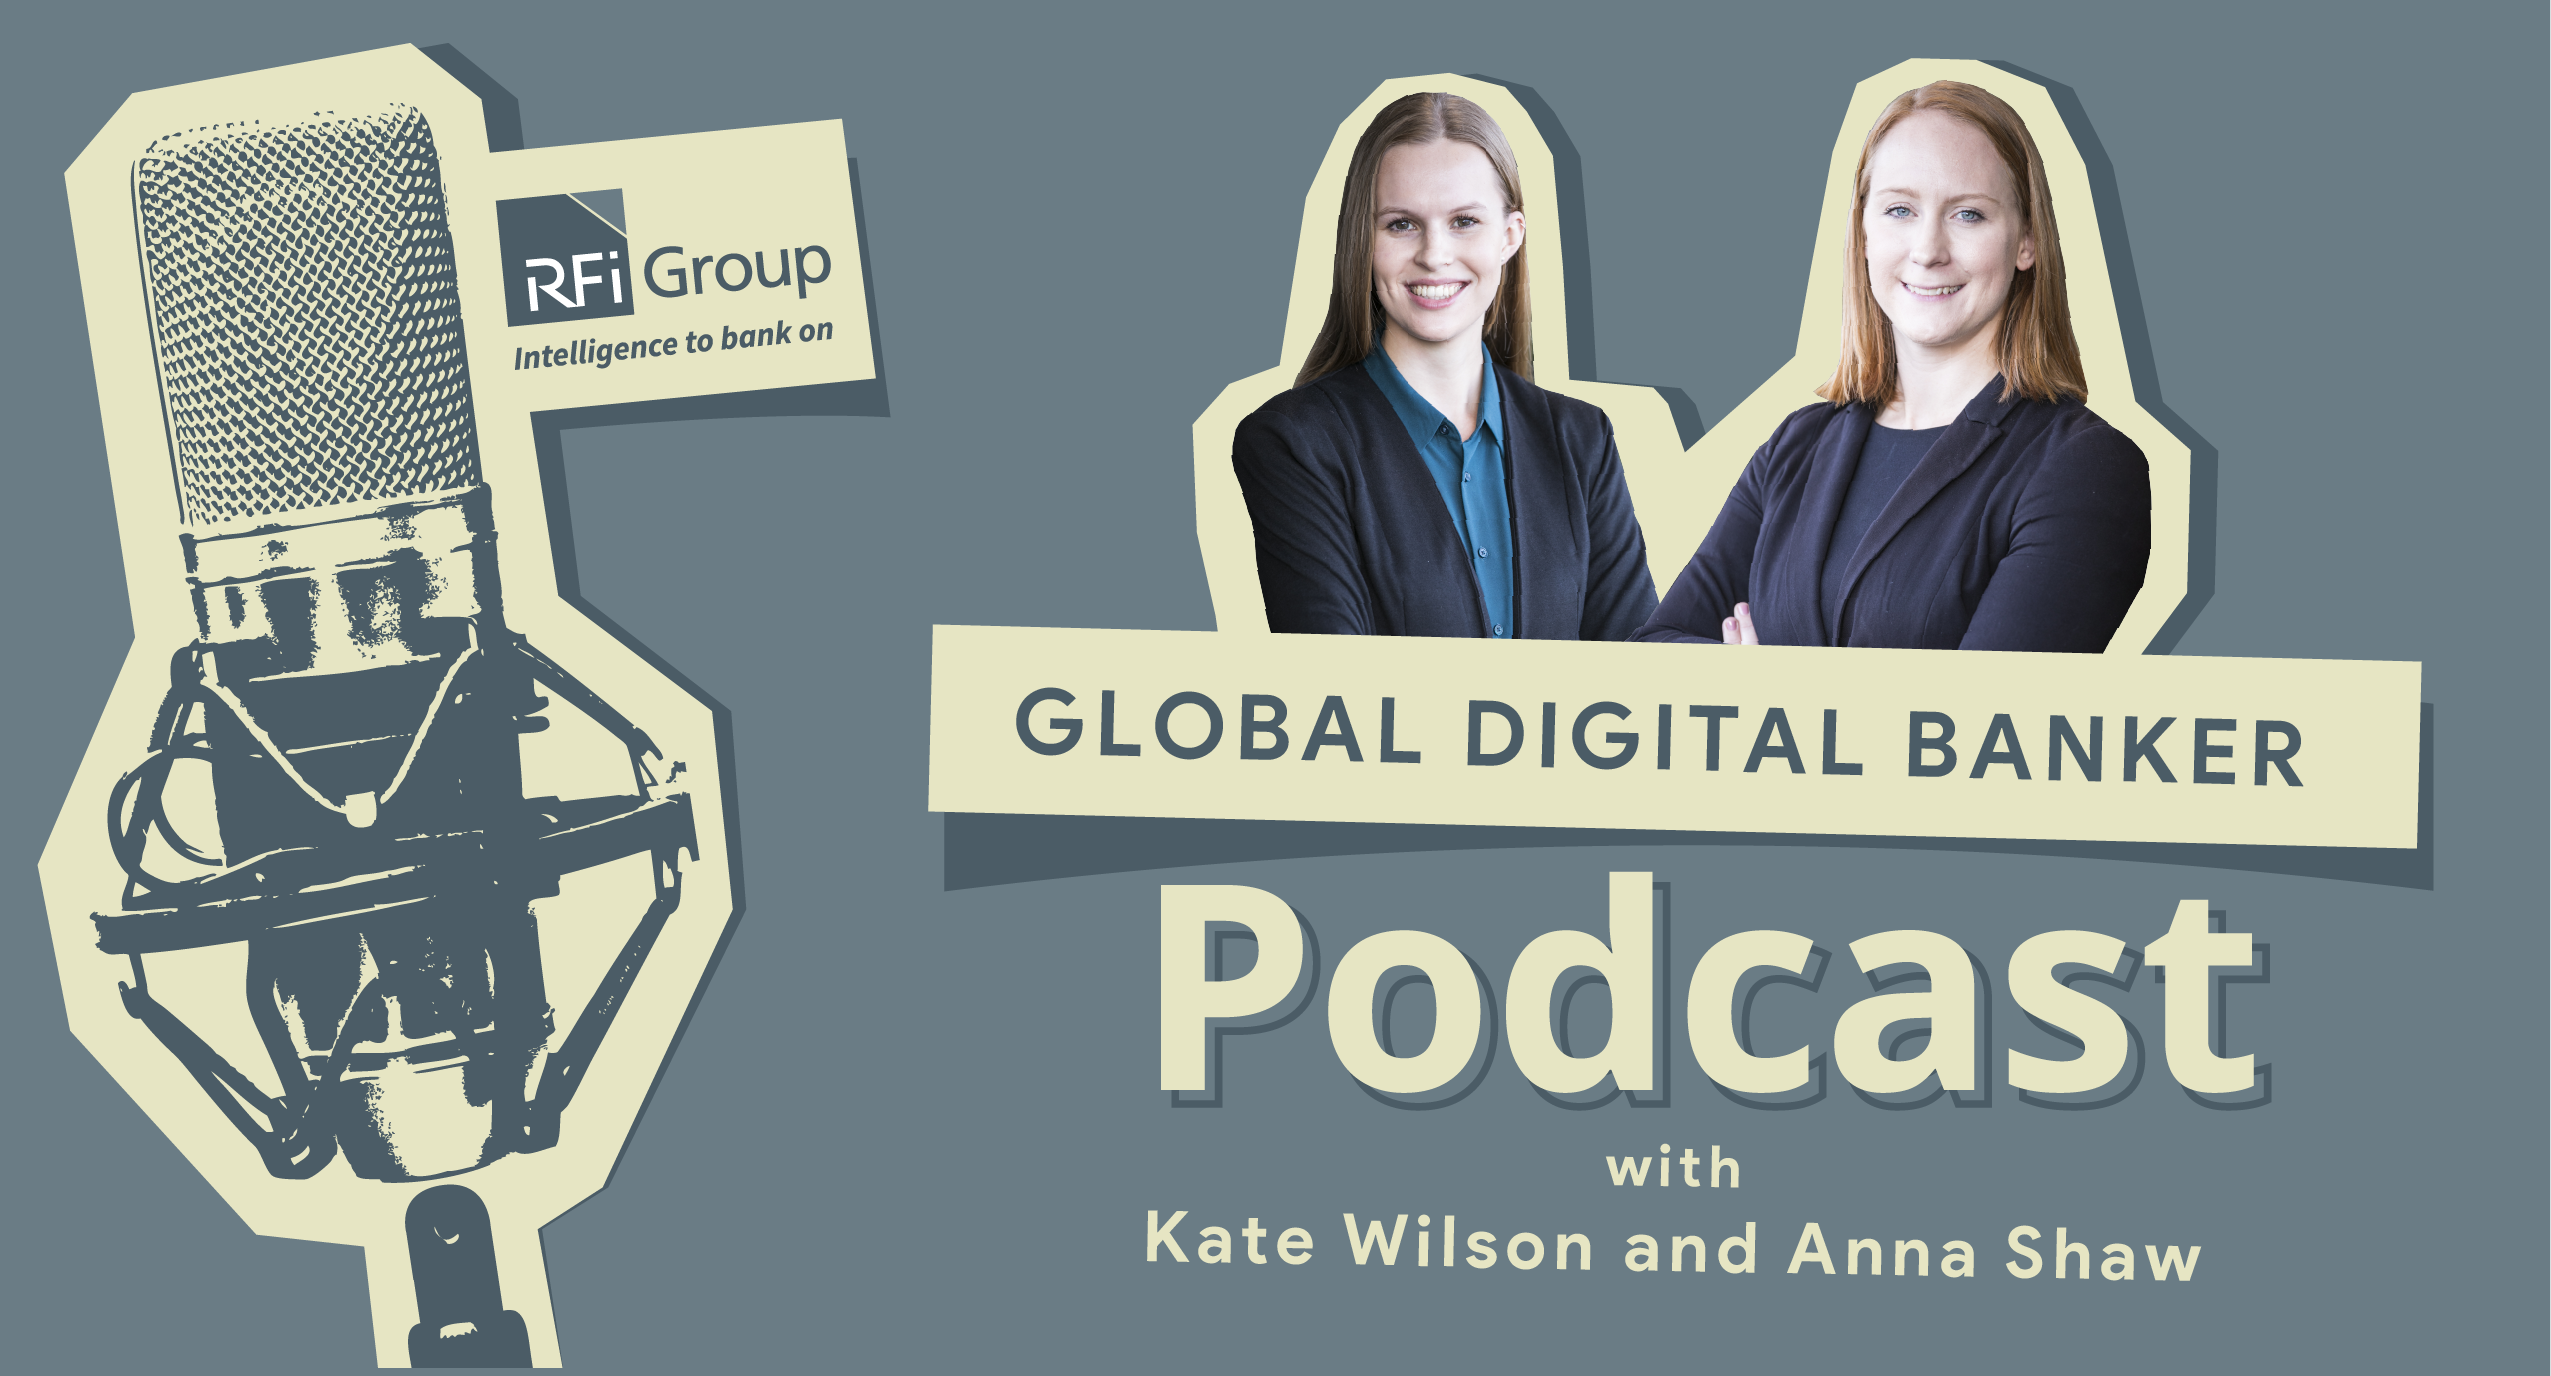 The Global Digital Banker podcast